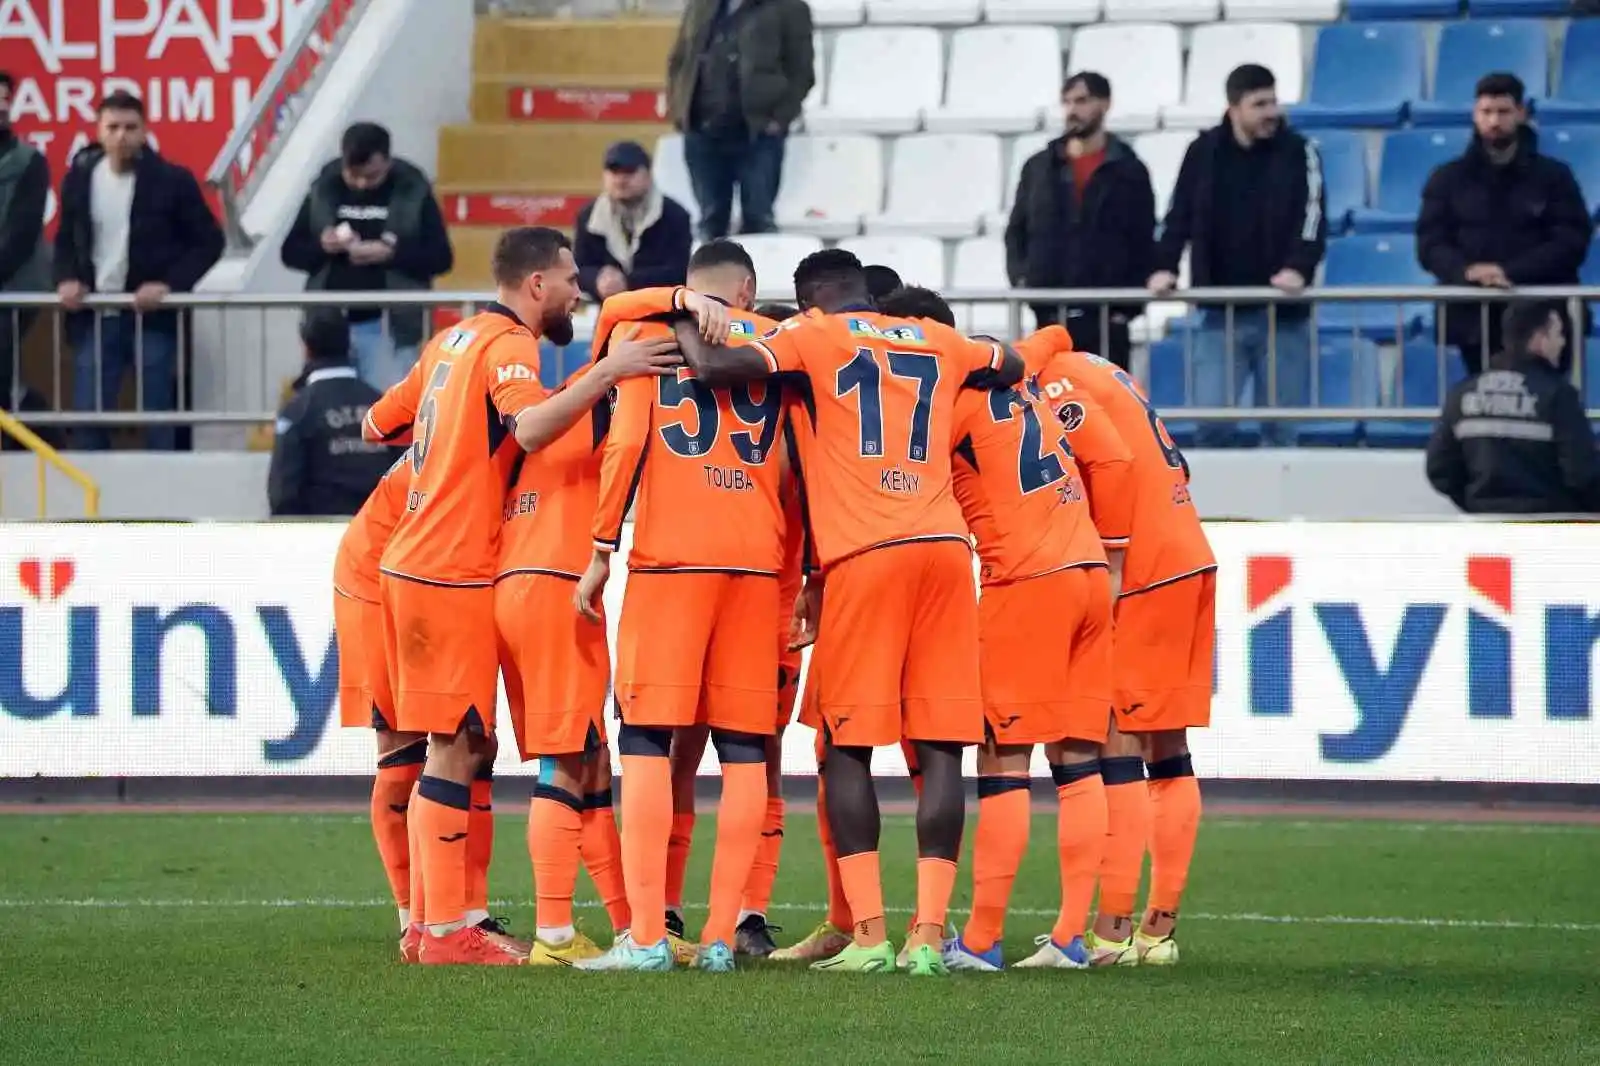 Spor Toto Süper Lig: Kasımpaşa: 1 - Medipol Başakşehir: 3 (Maç sonucu)
